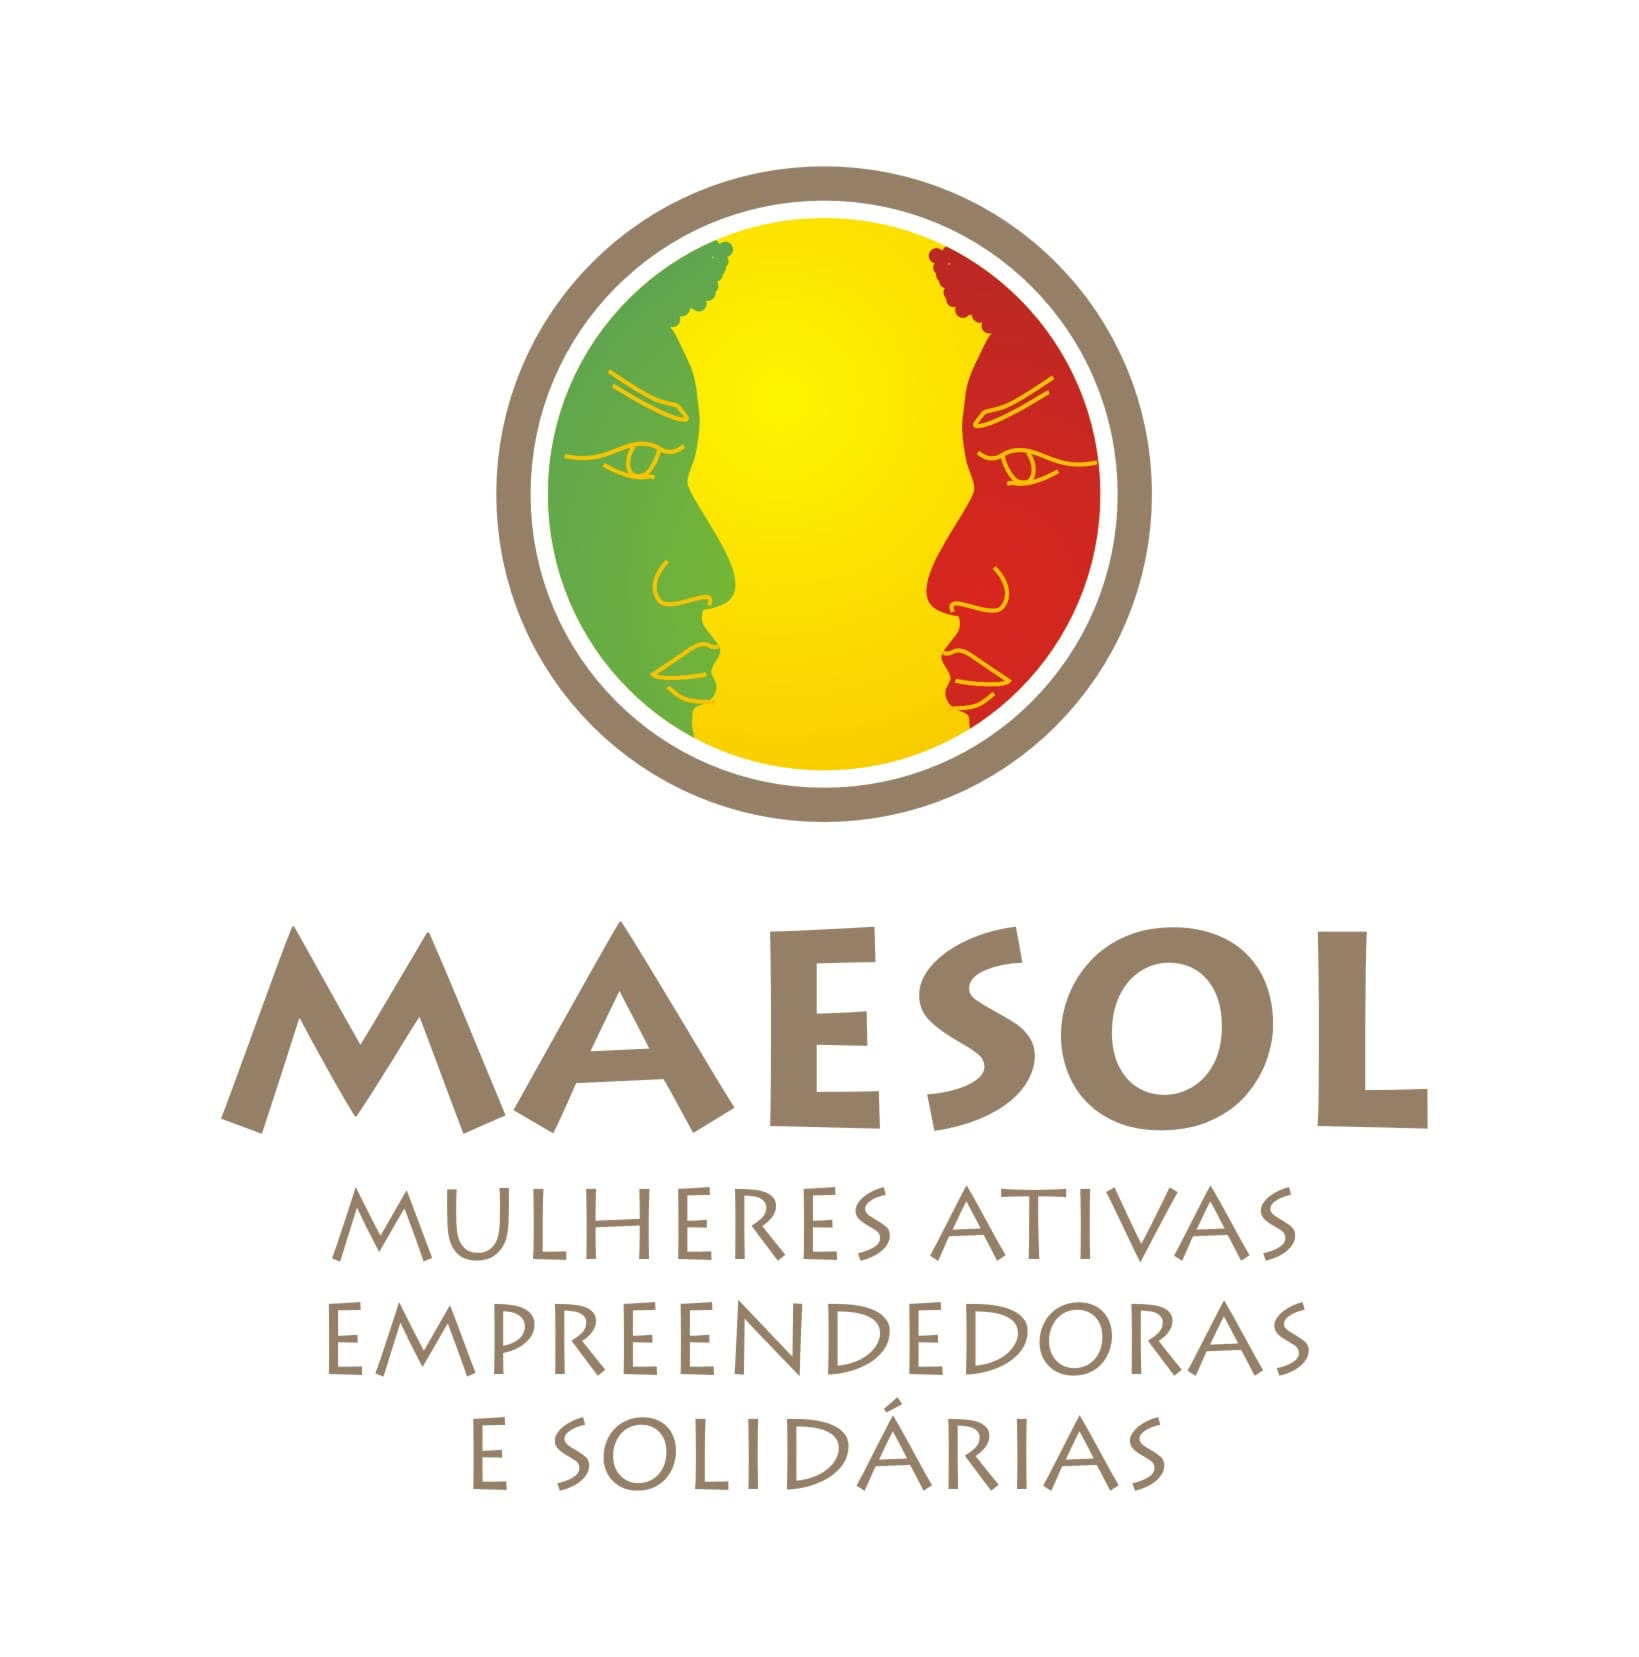 MAESOL logo